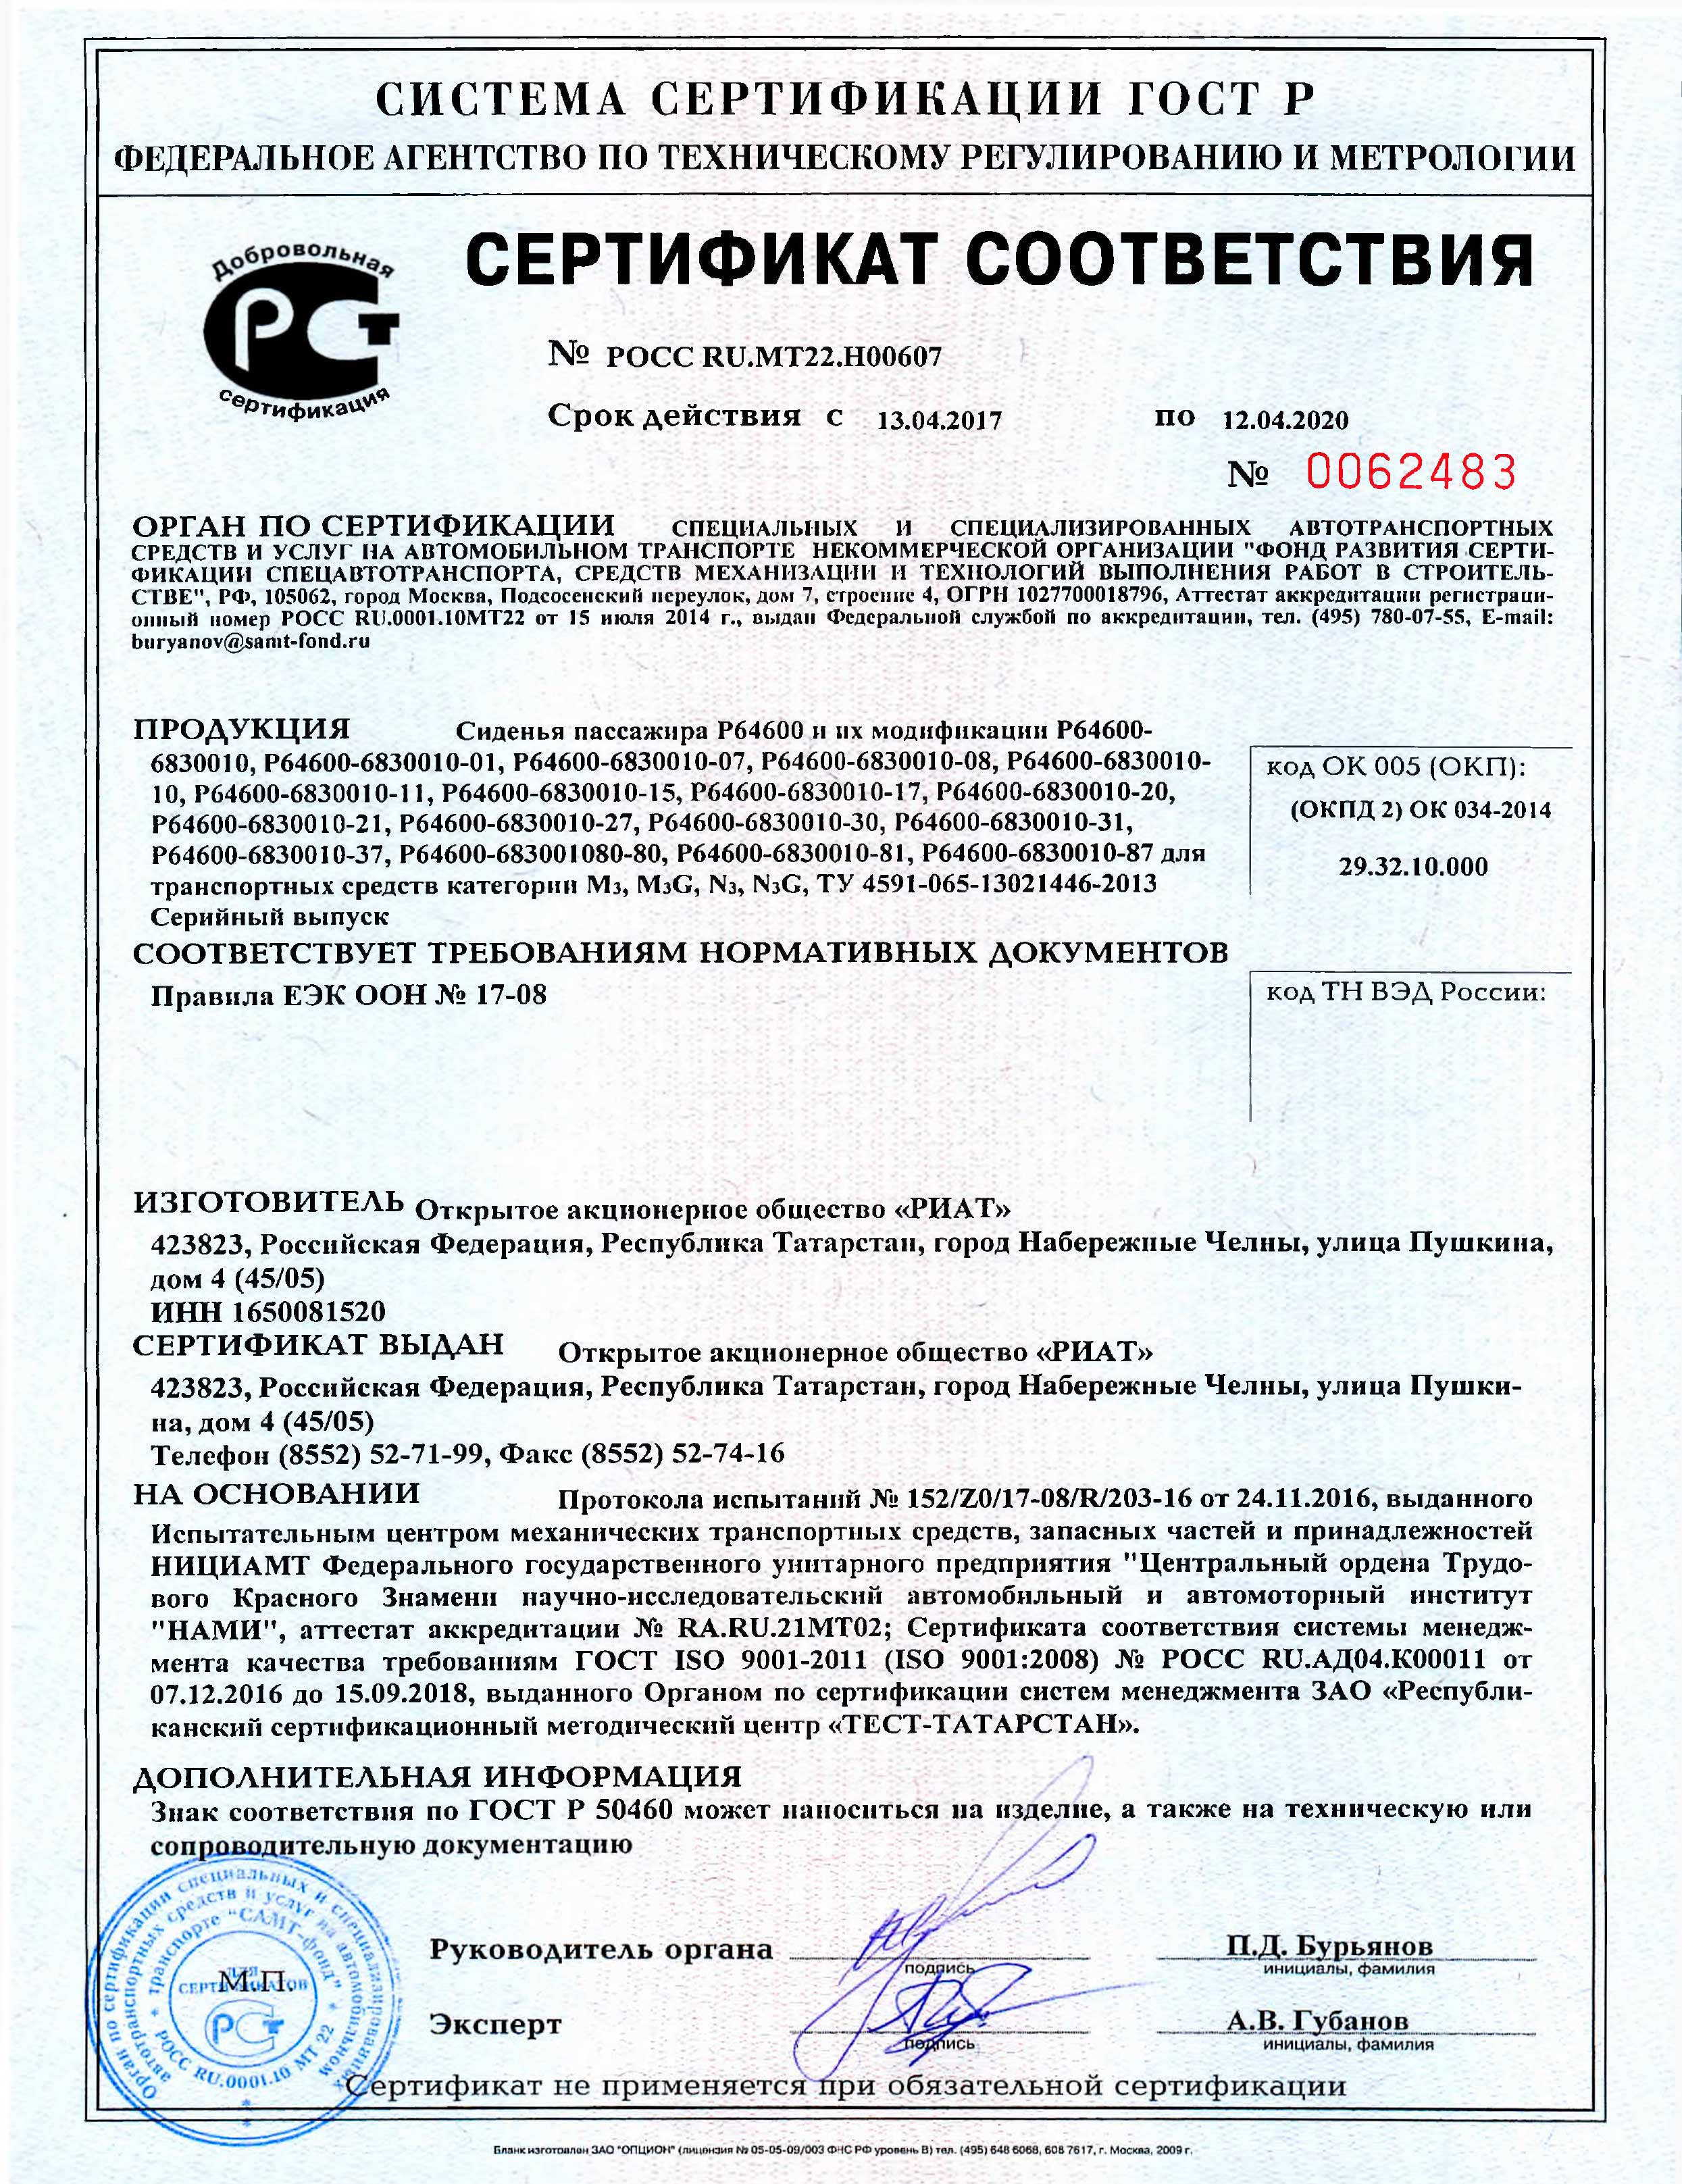 Сертификат сиденья РИАТ POCC-RU.MT22.H00607